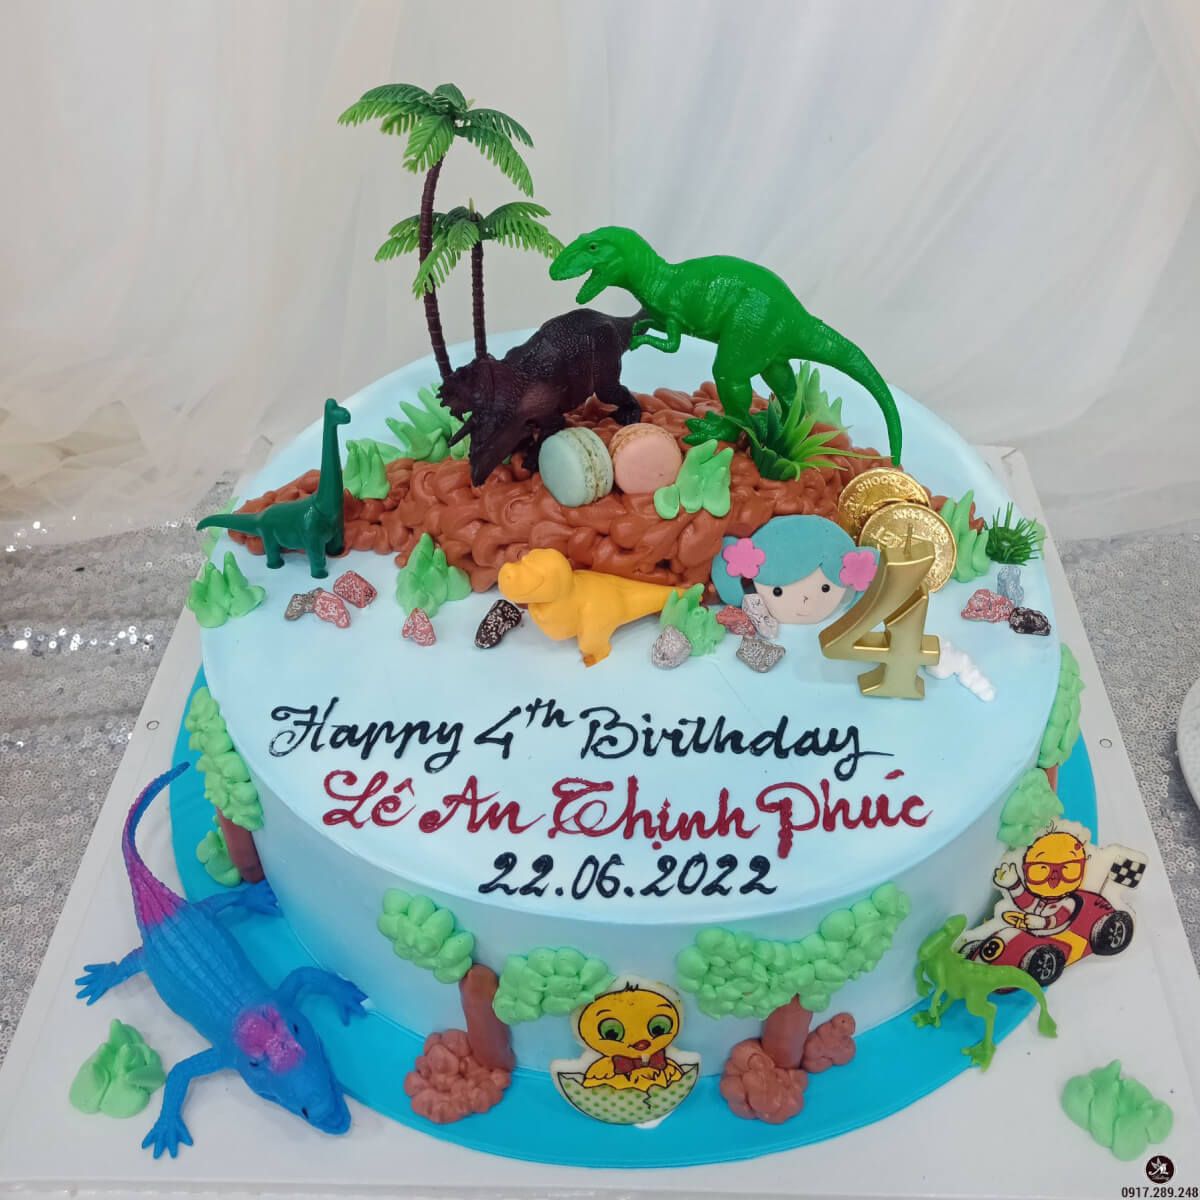 Bánh kem sinh nhật màu xanh hình ảnh những con vật khủng long, hưu ...